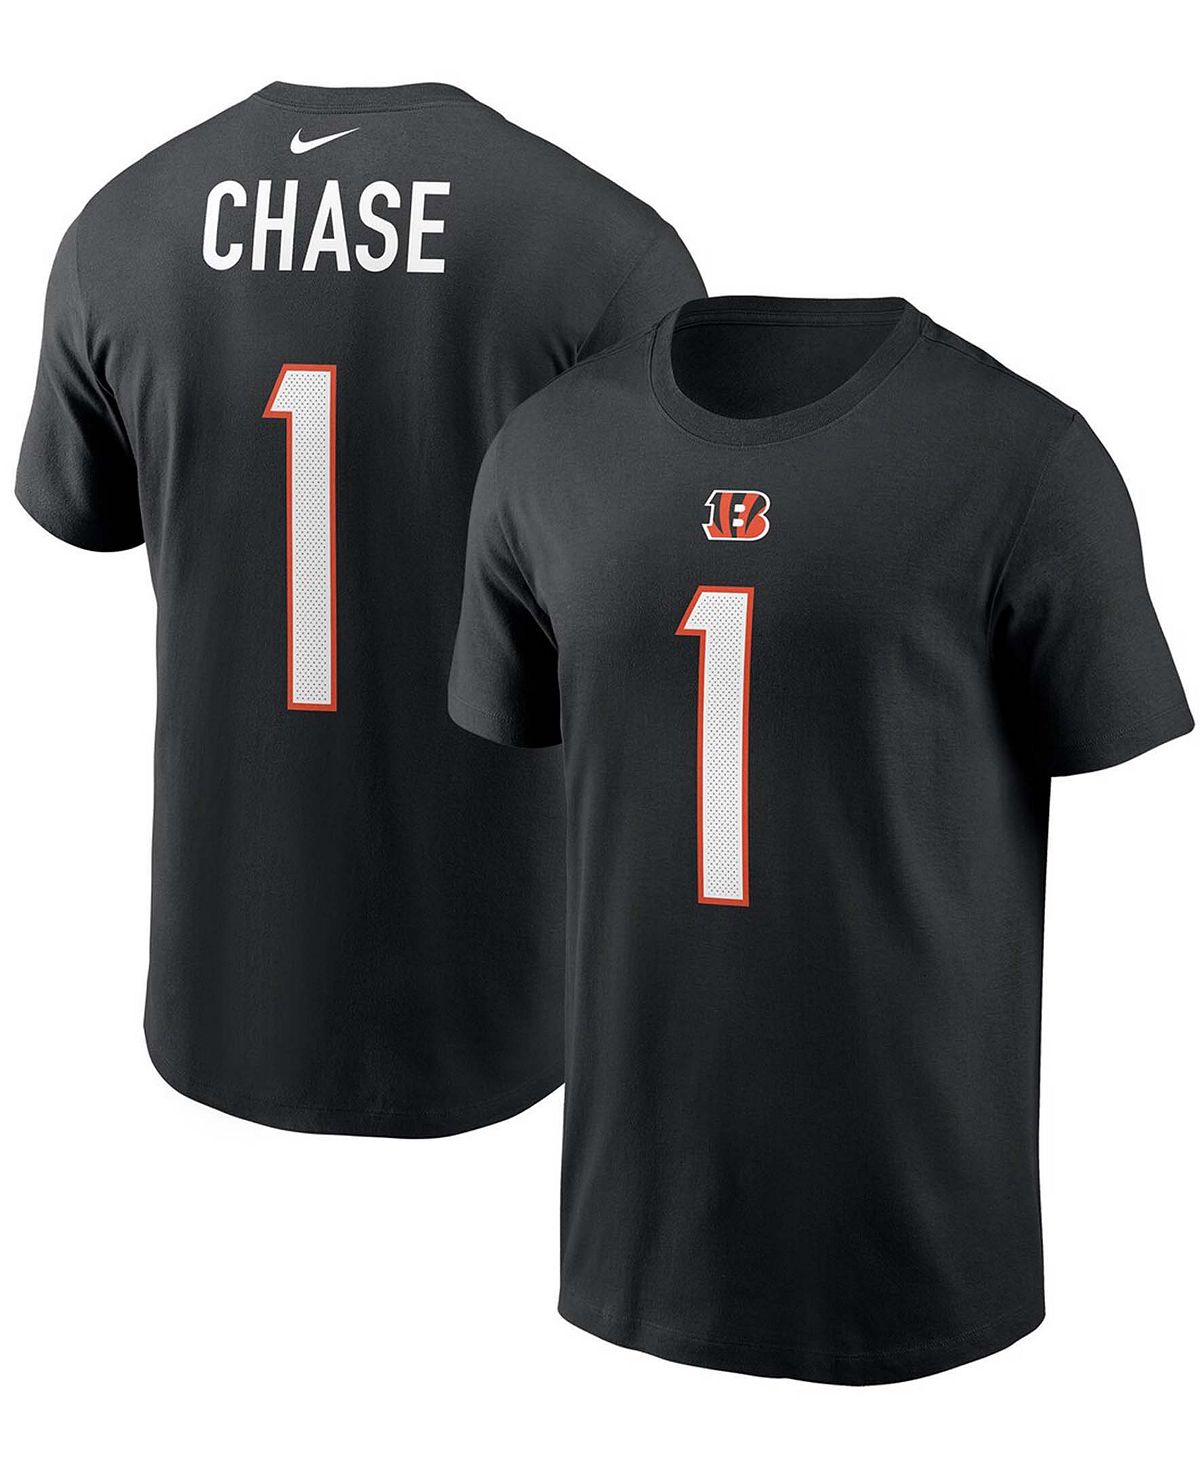 футболка chase размер м черный Мужская футболка Ja'Marr Chase Black Cincinnati Bengals с именем и номером игрока первого раунда драфта НФЛ 2021 года Nike